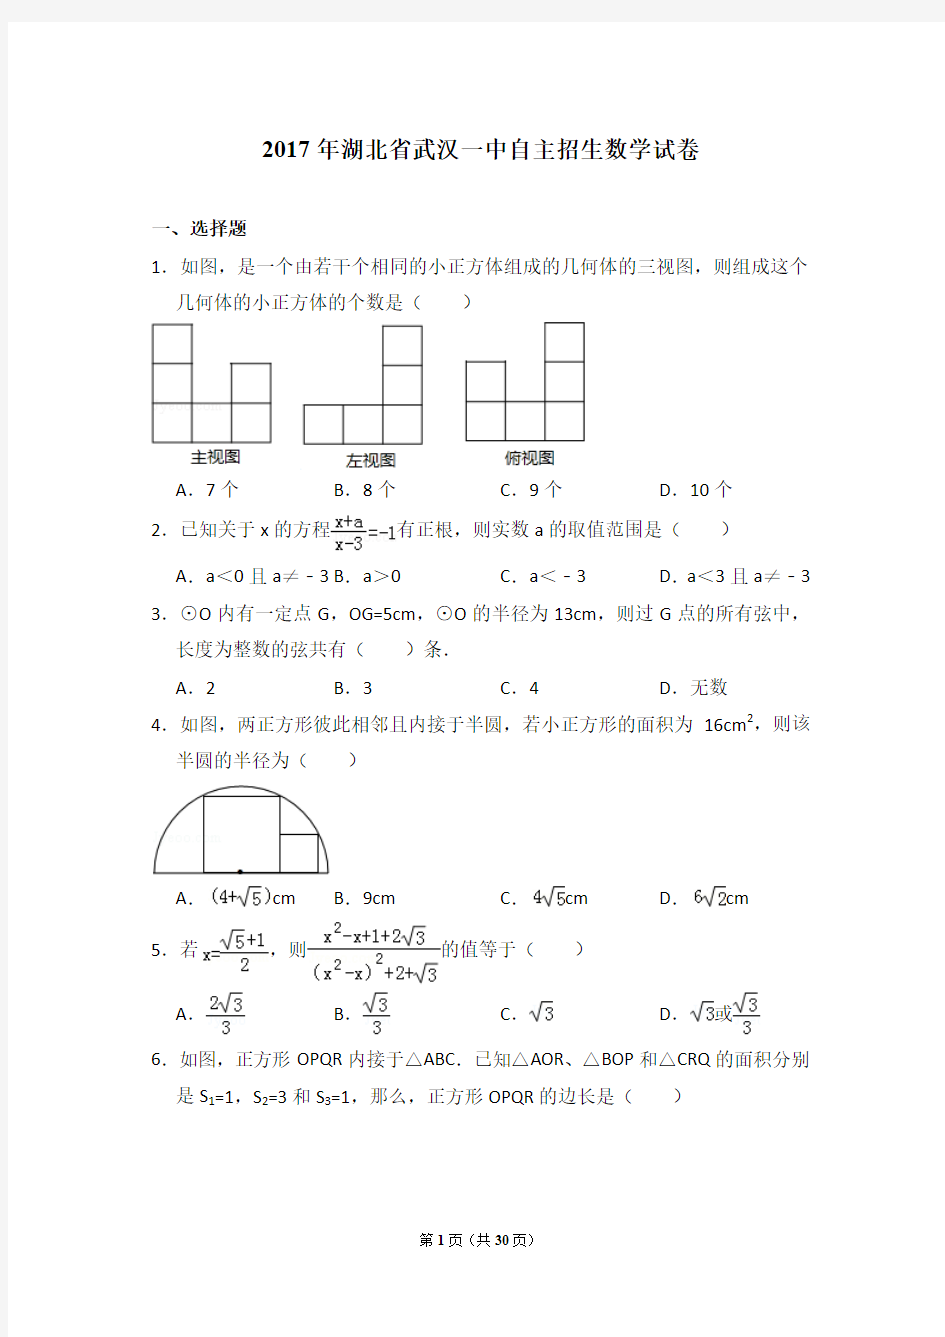 2017年湖北省武汉一中自主招生数学试卷及详细试卷解析